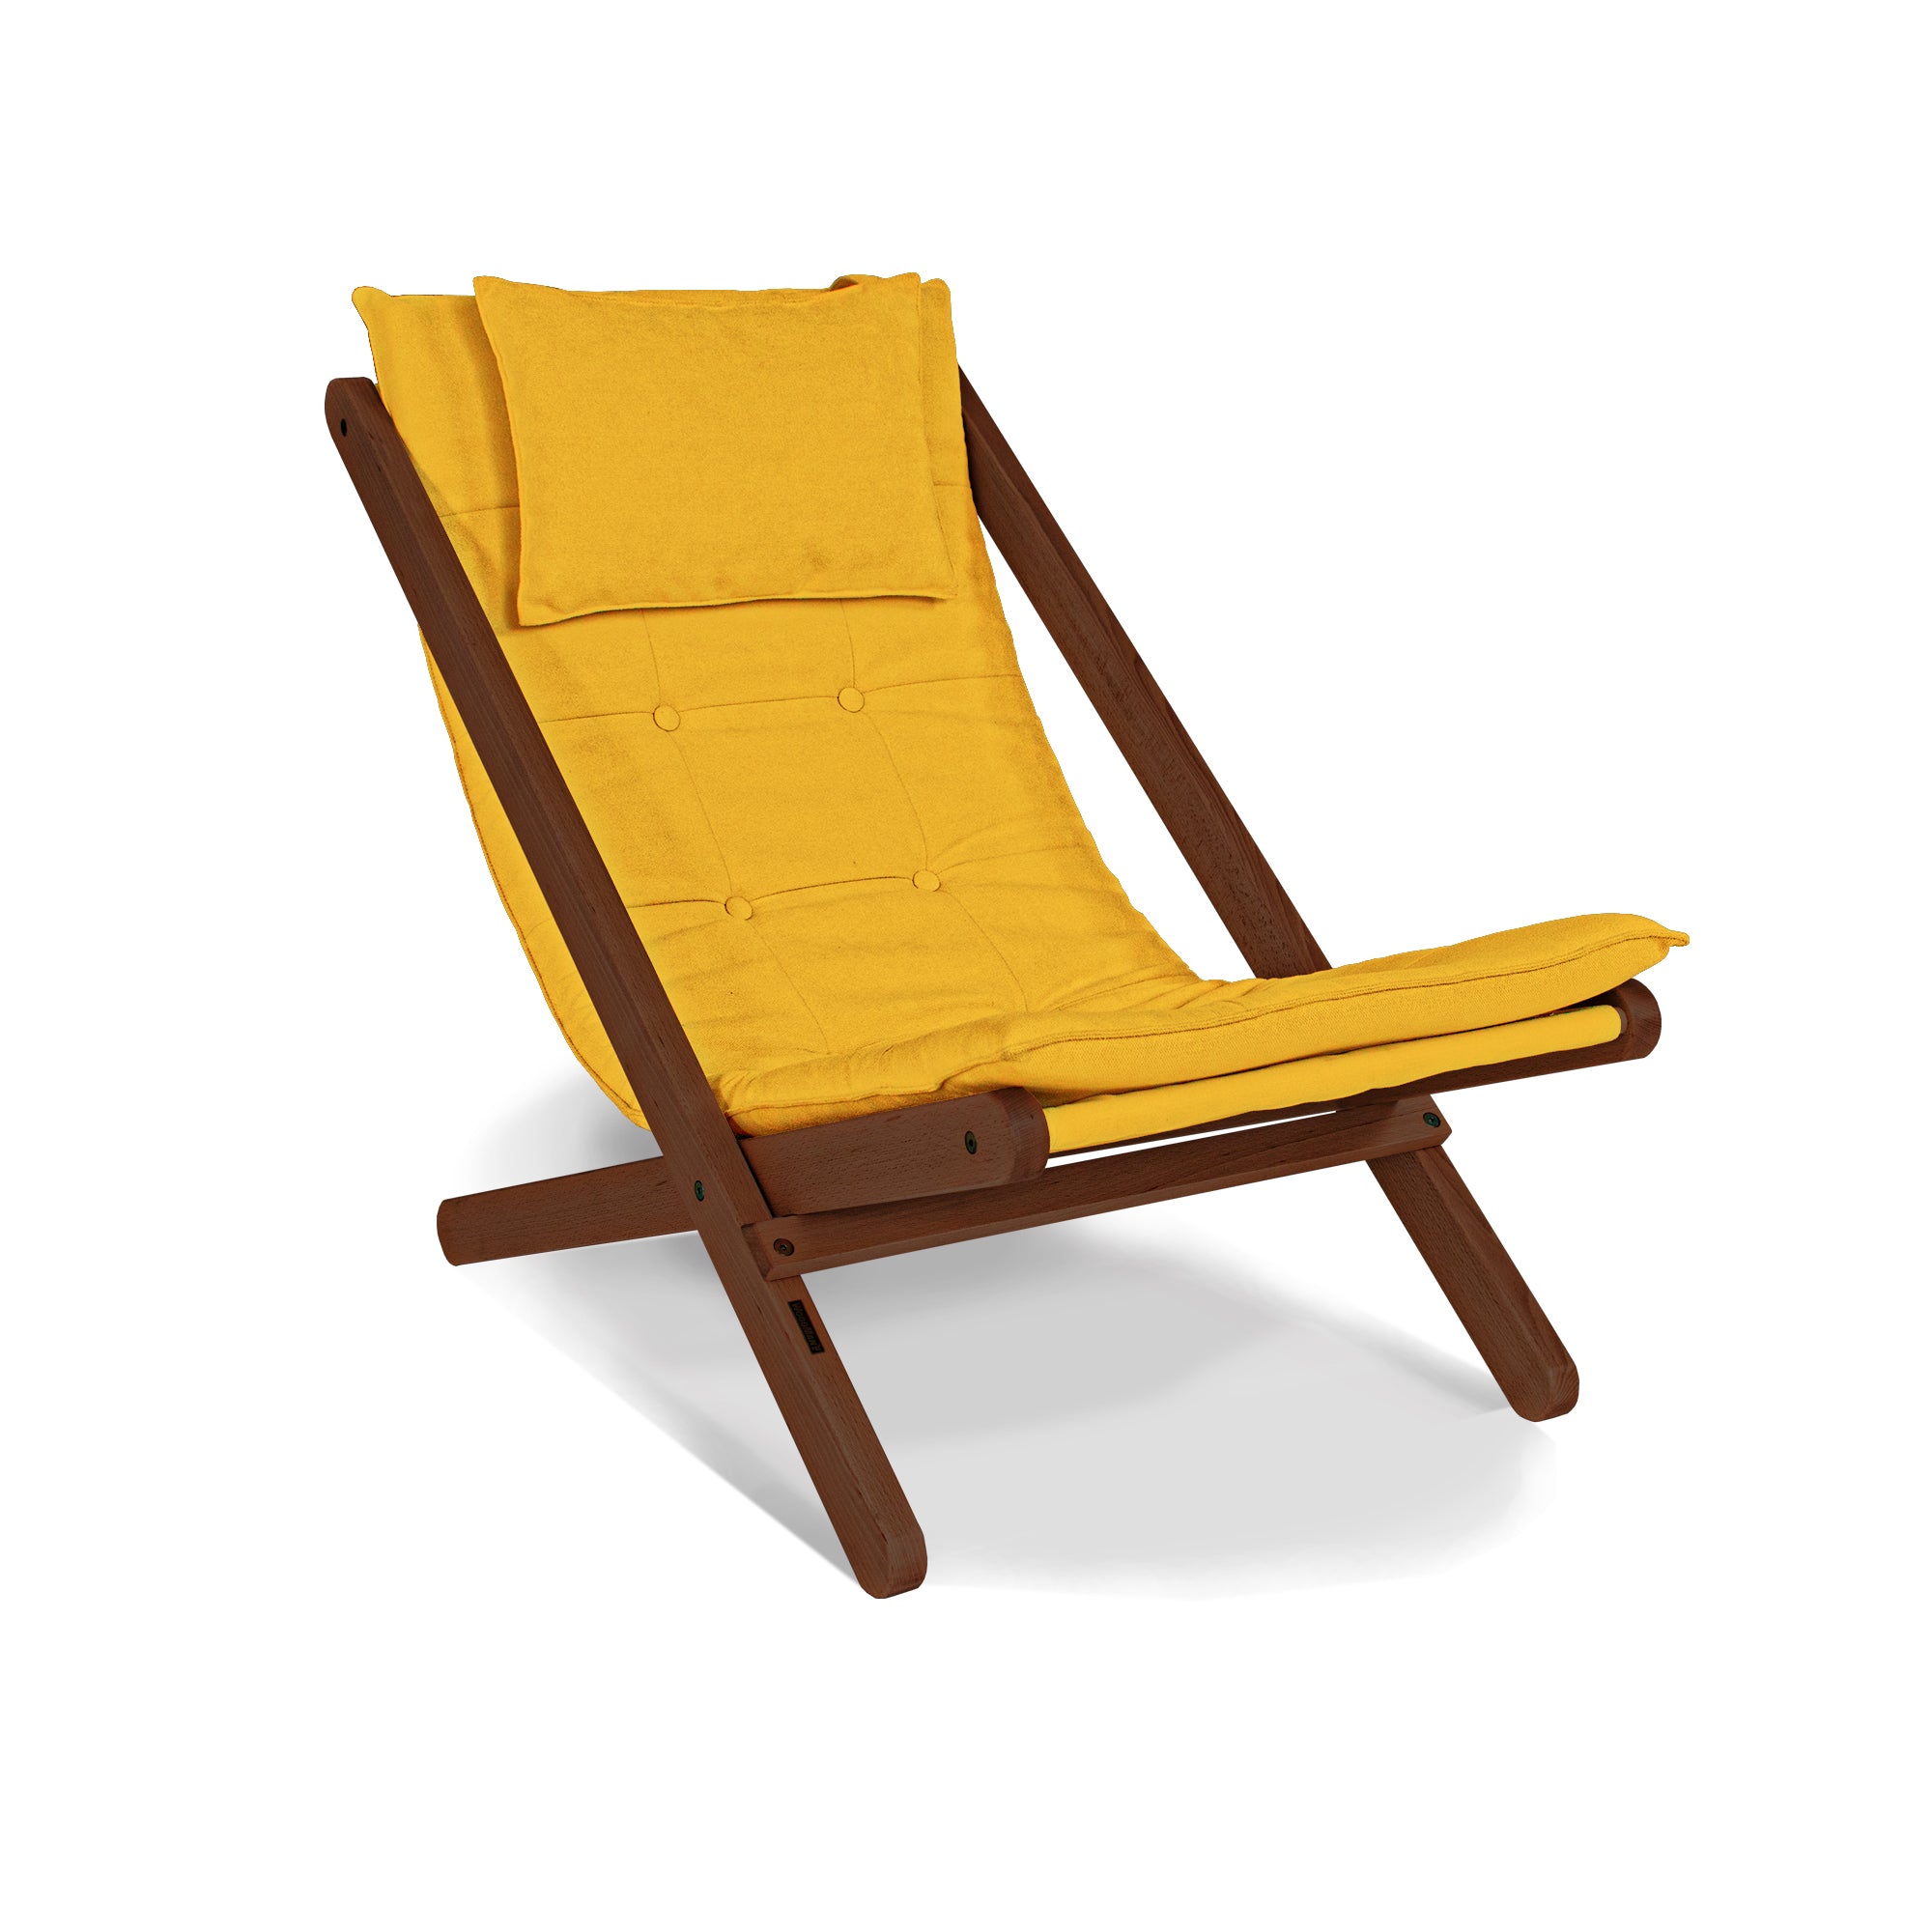 ALLEGRO Deckchair -walnut frame-yellow fabric